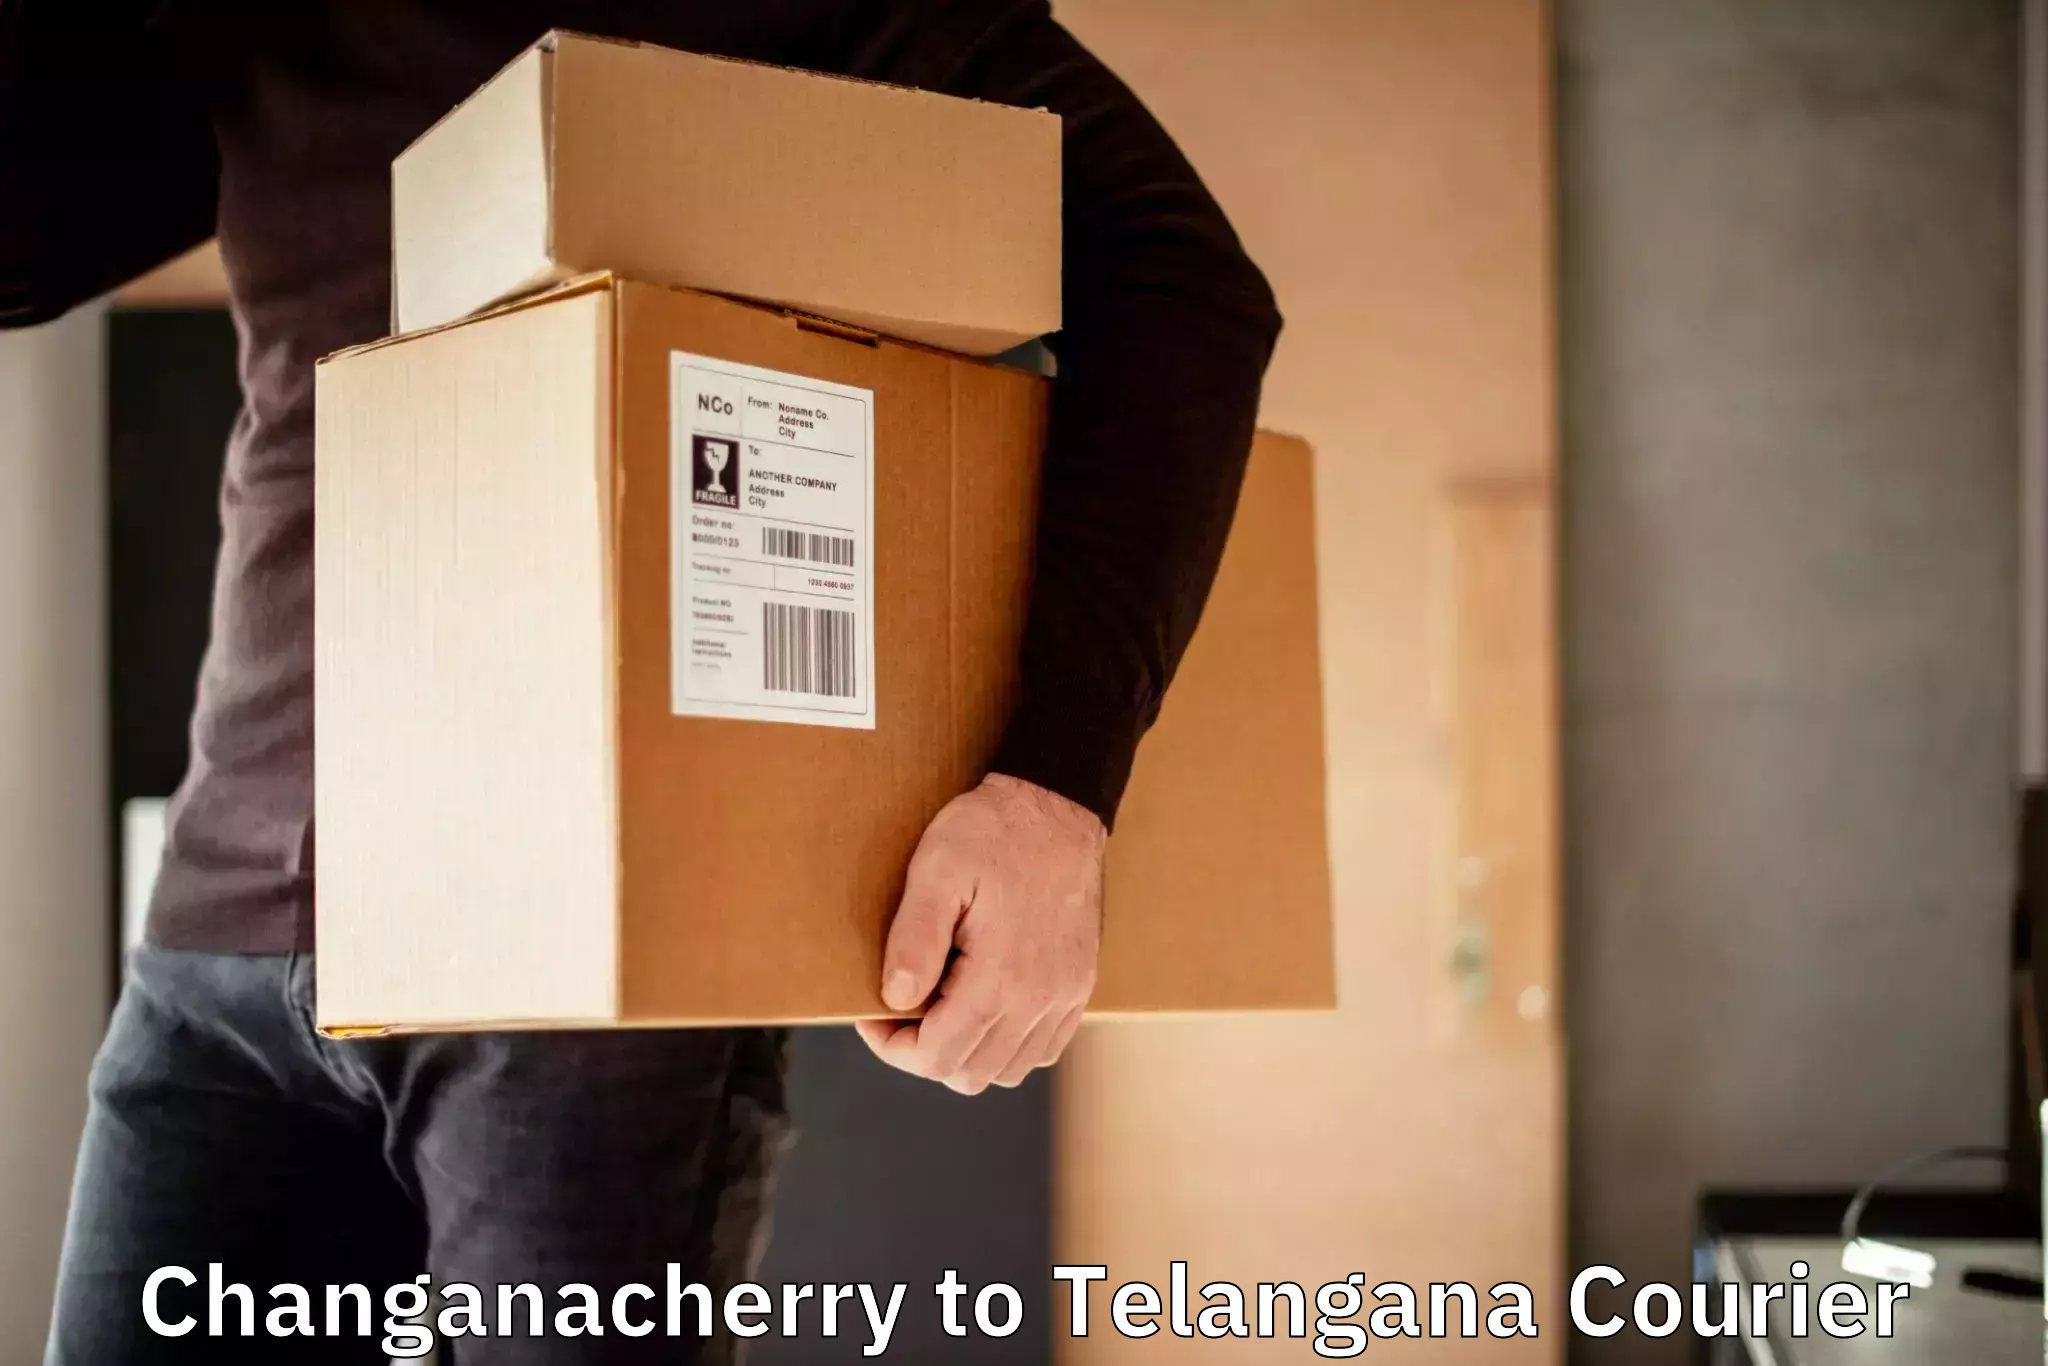 24/7 courier service Changanacherry to Bhuvanagiri